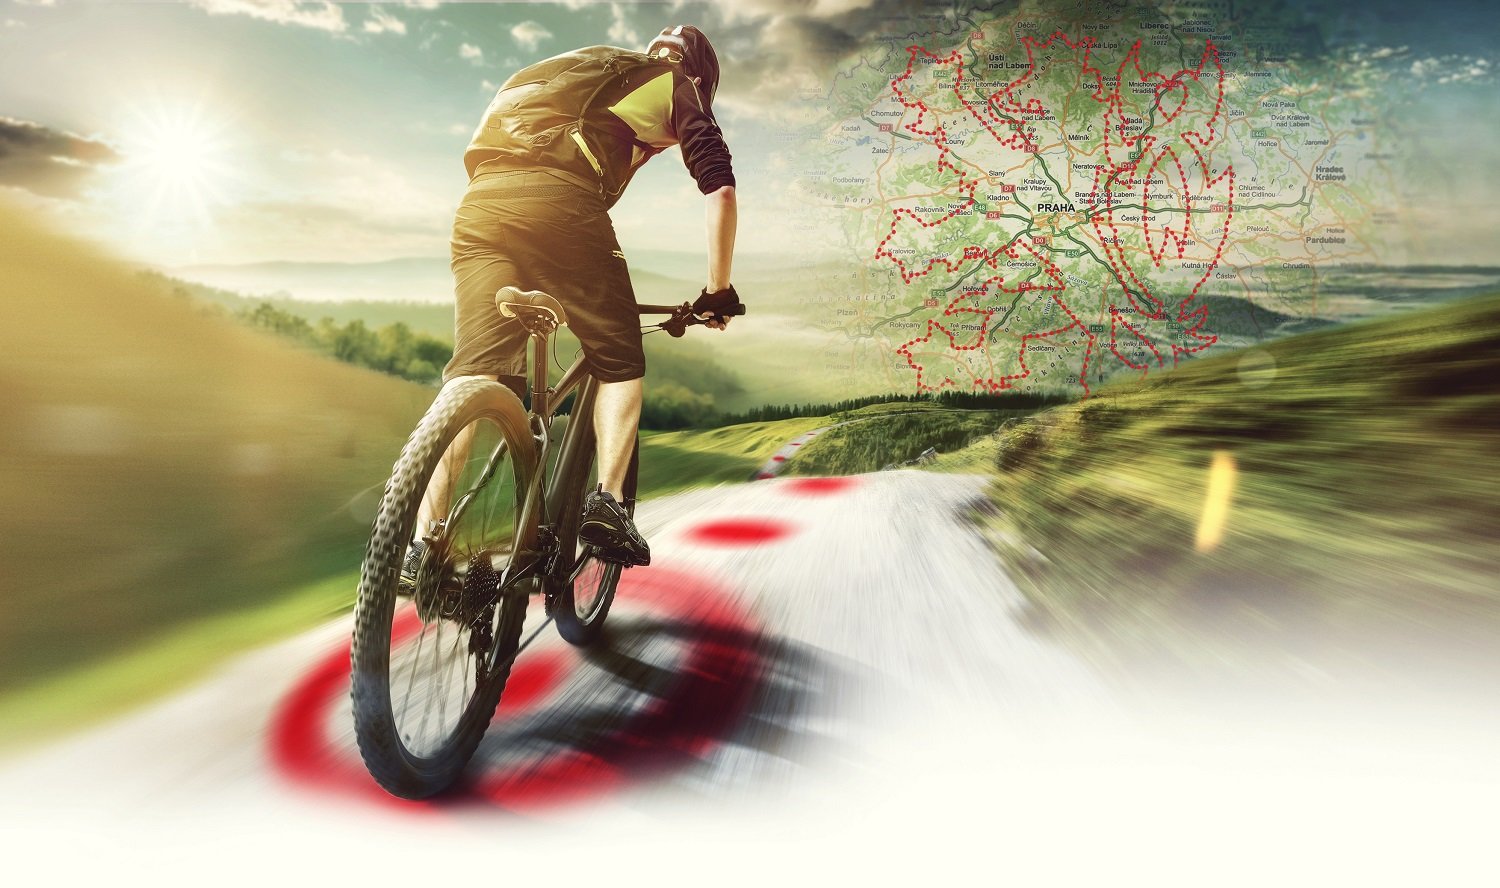 V mapě České republiky vznikl největší GPS obrazec na světě ve tvaru dvouocasého lva - státního symbolu ČR, vyobrazeného pomocí tras cyklistických tras o celkové délce přes 1900 km.